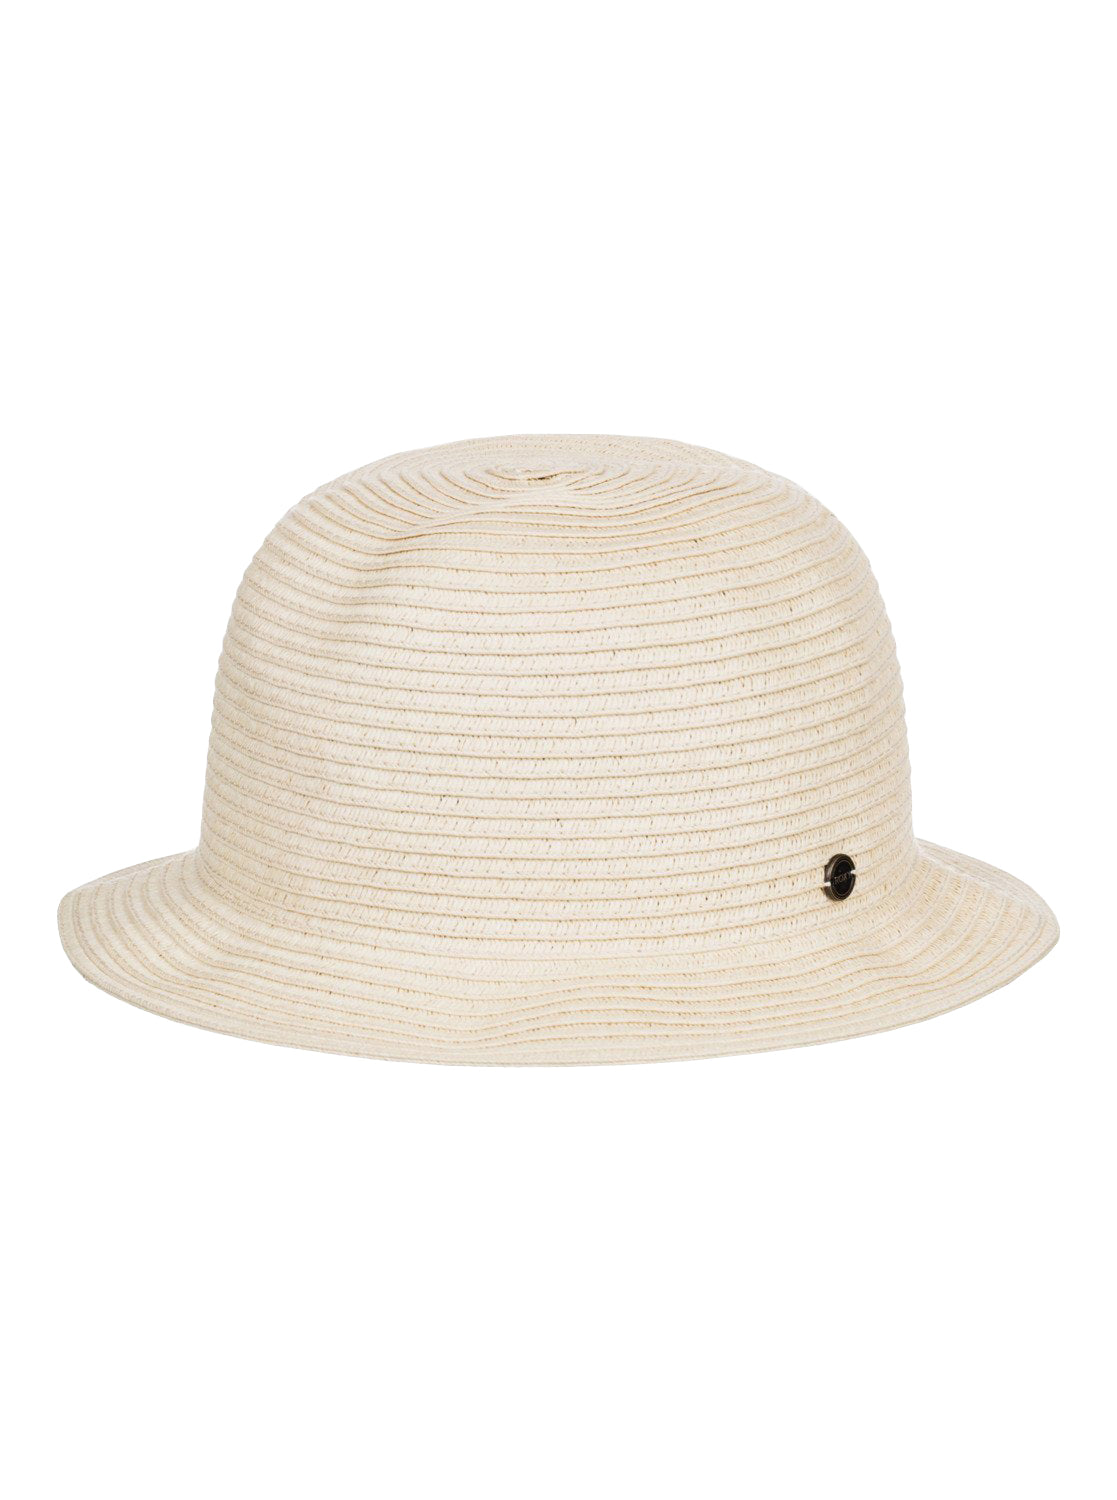 Roxy Summer Mood Bucket Hat